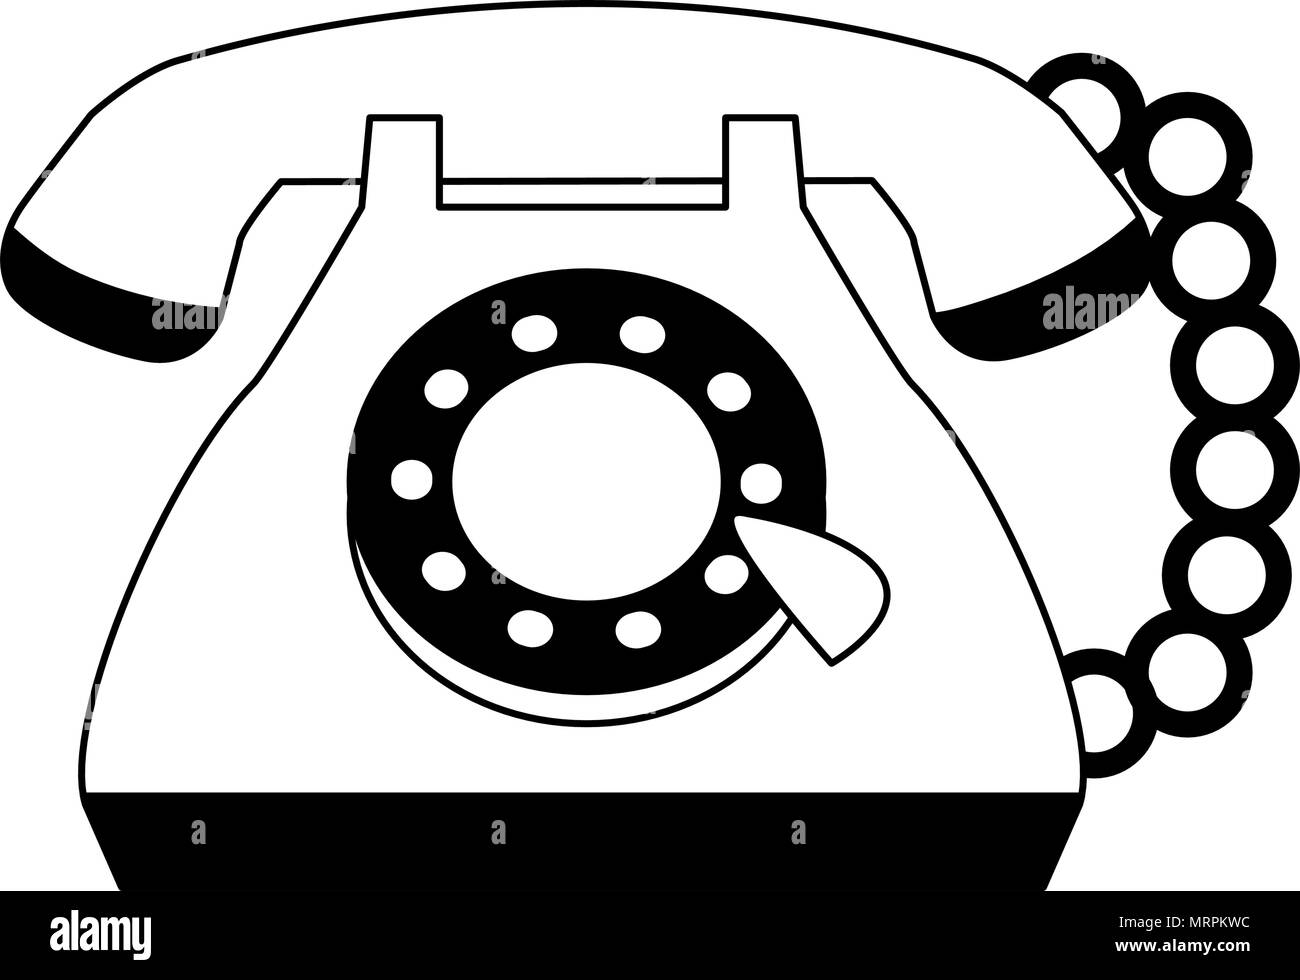 Jahrgang Telefon Cartoon In Den Farben Schwarz Und Weiss Stock Vektorgrafik Alamy